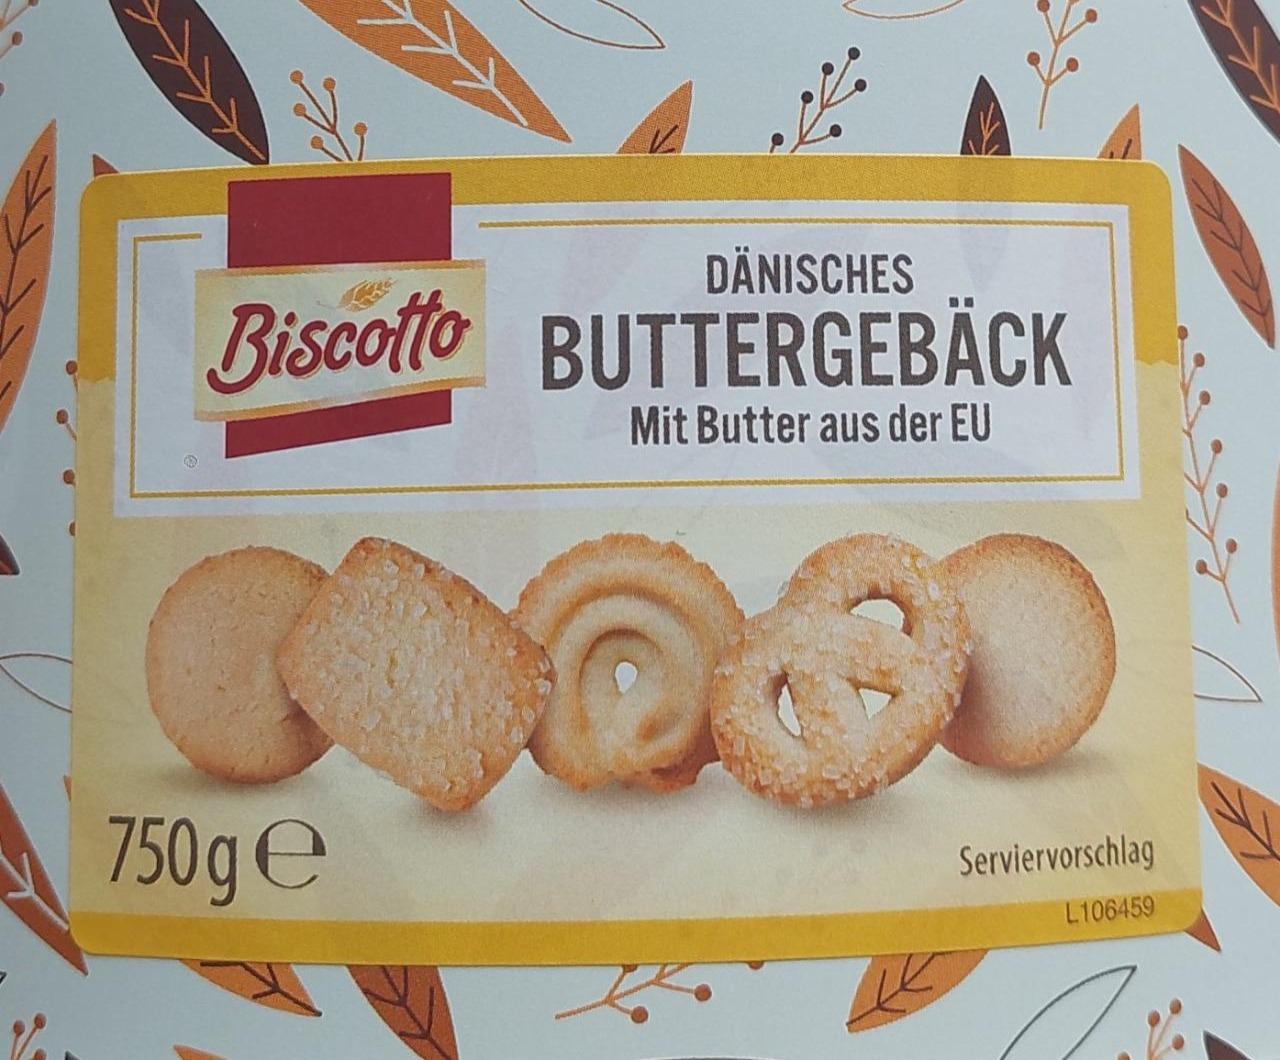 Фото - печенье датское сливочное Biscotto